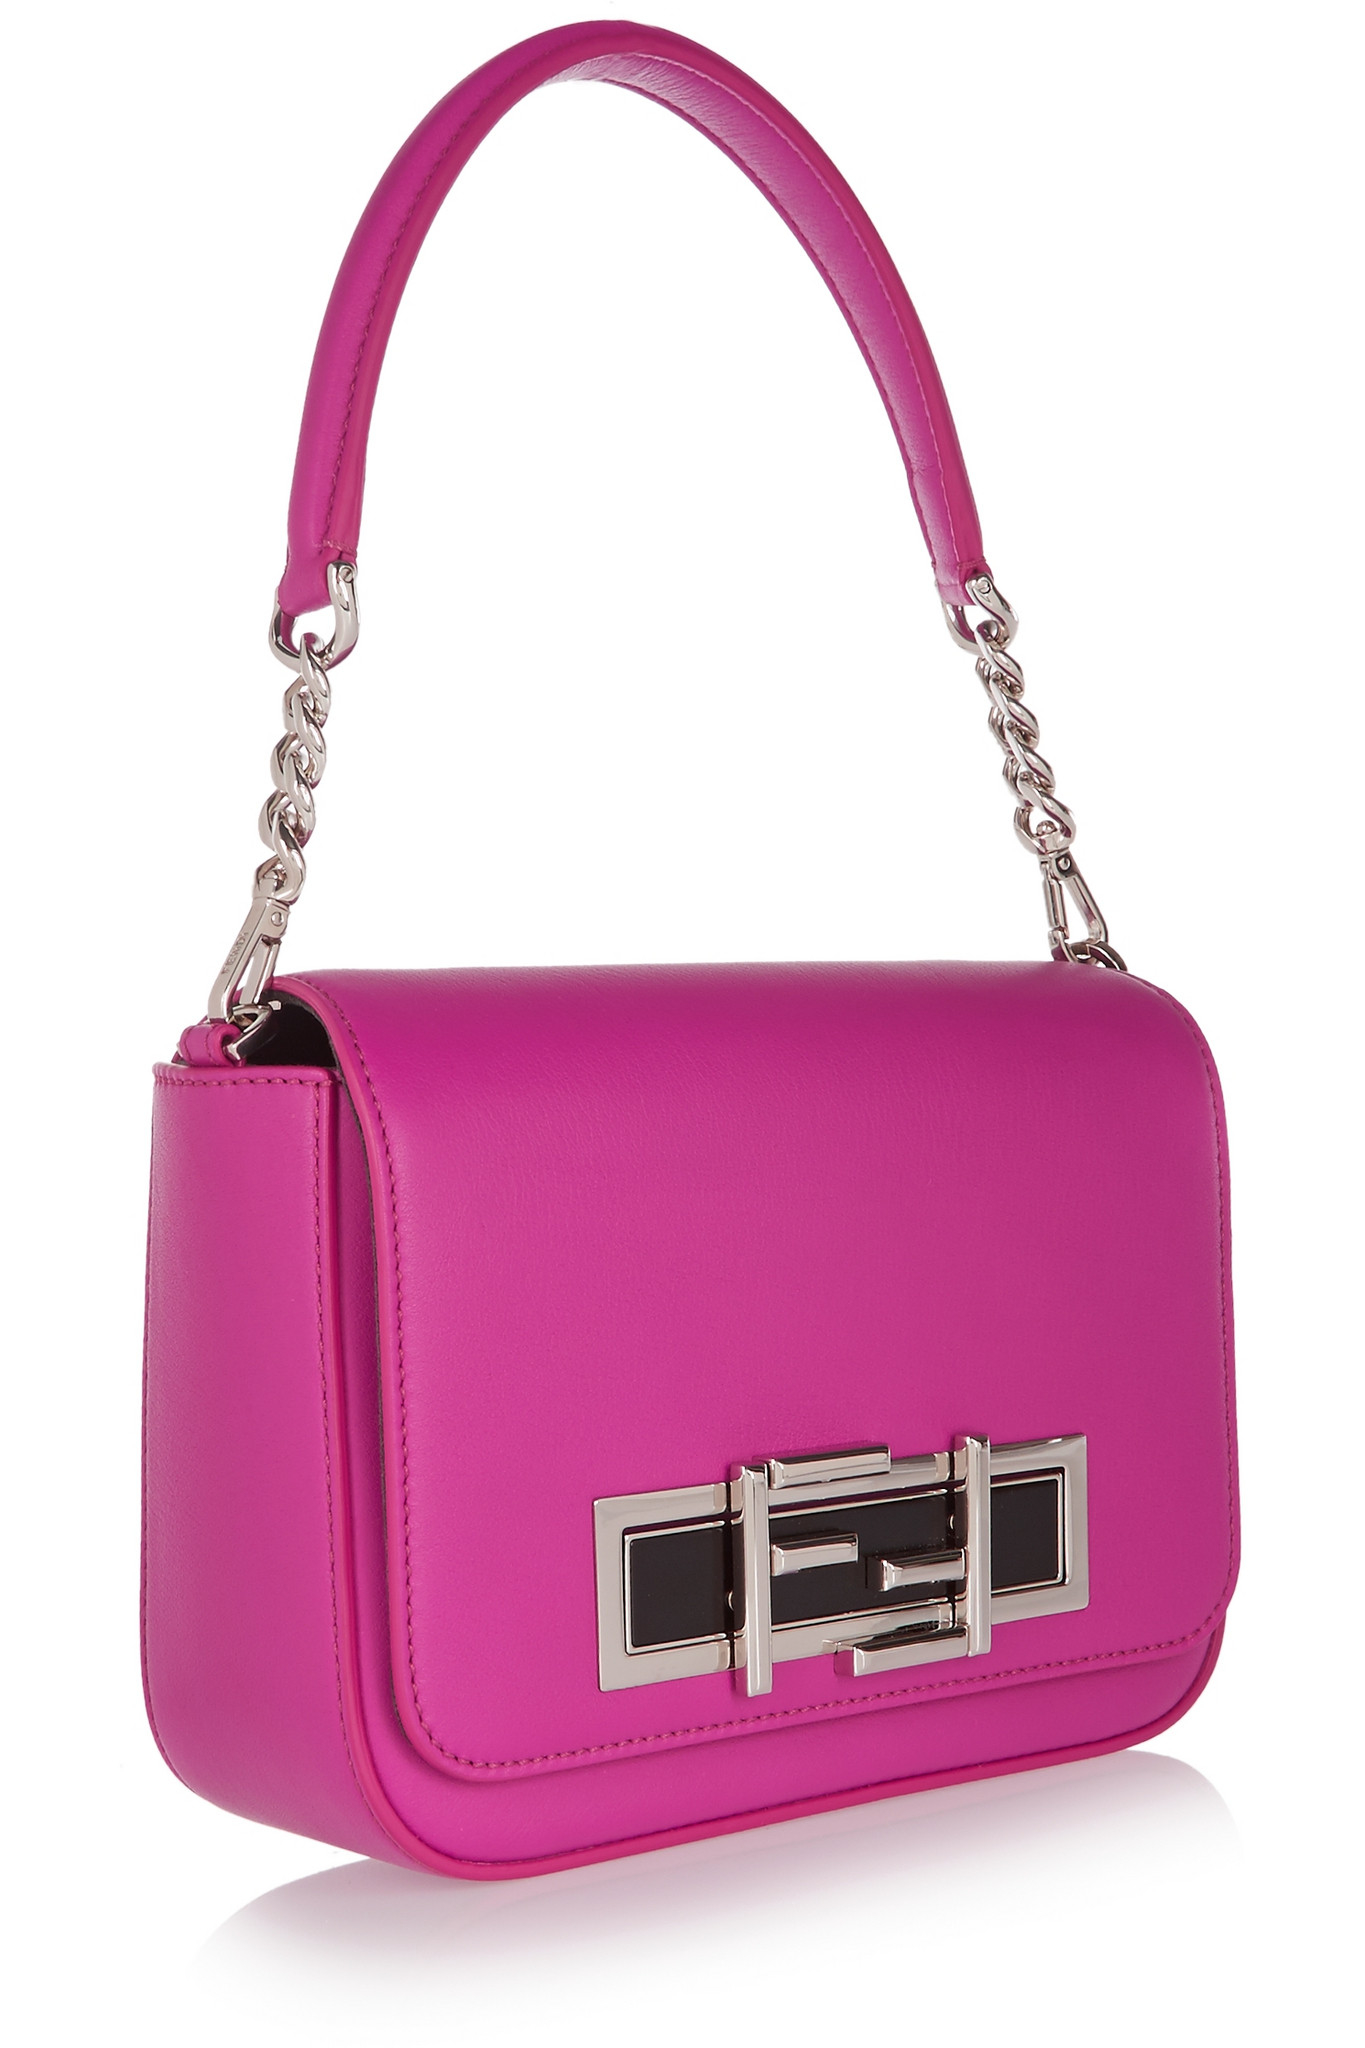 Lyst - Fendi Baguette Leather Shoulder Bag in Pink